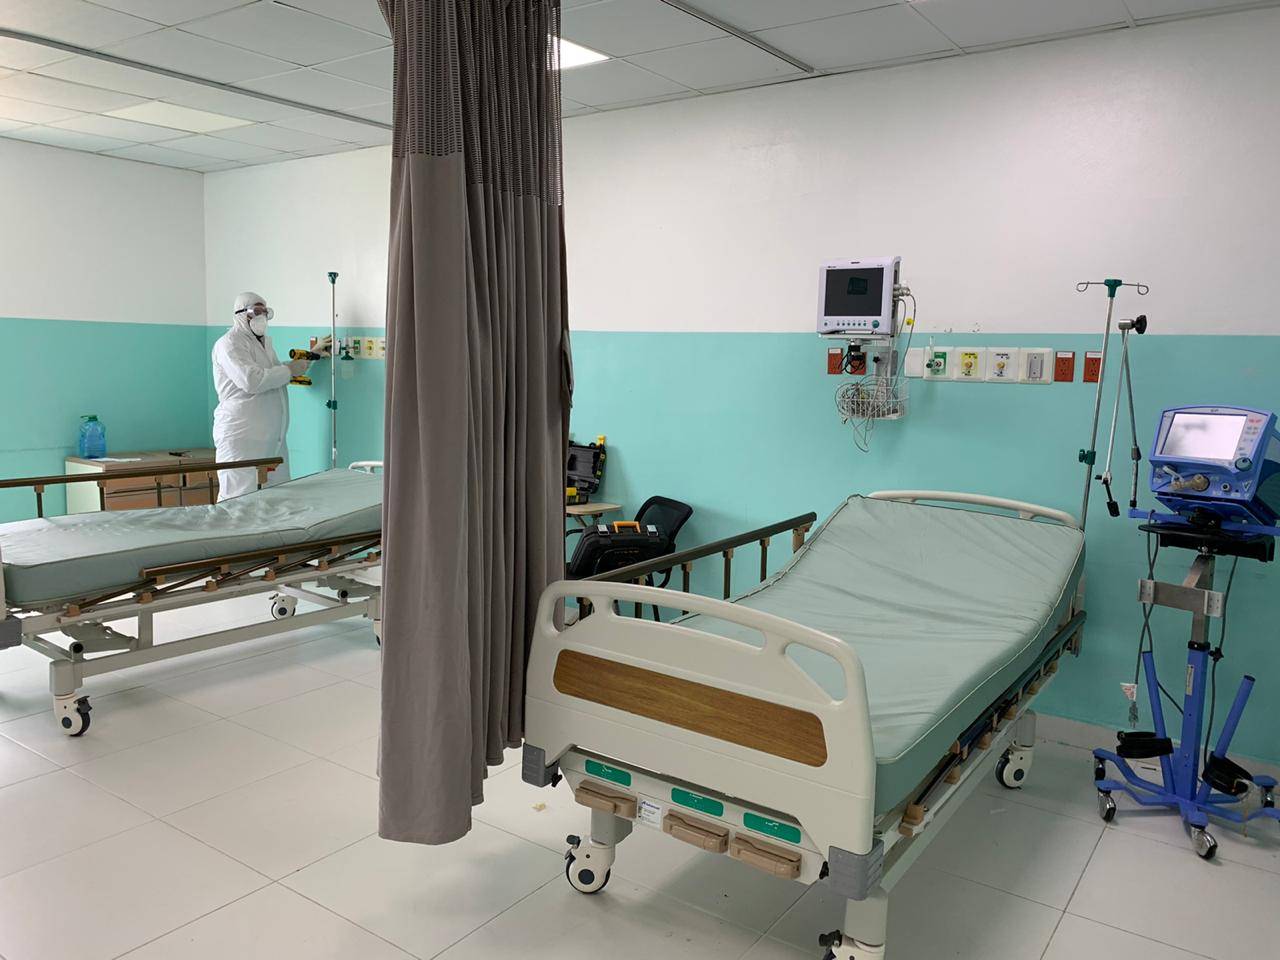 Hospitales habilitan 236 nuevas camas para pacientes COVID-19